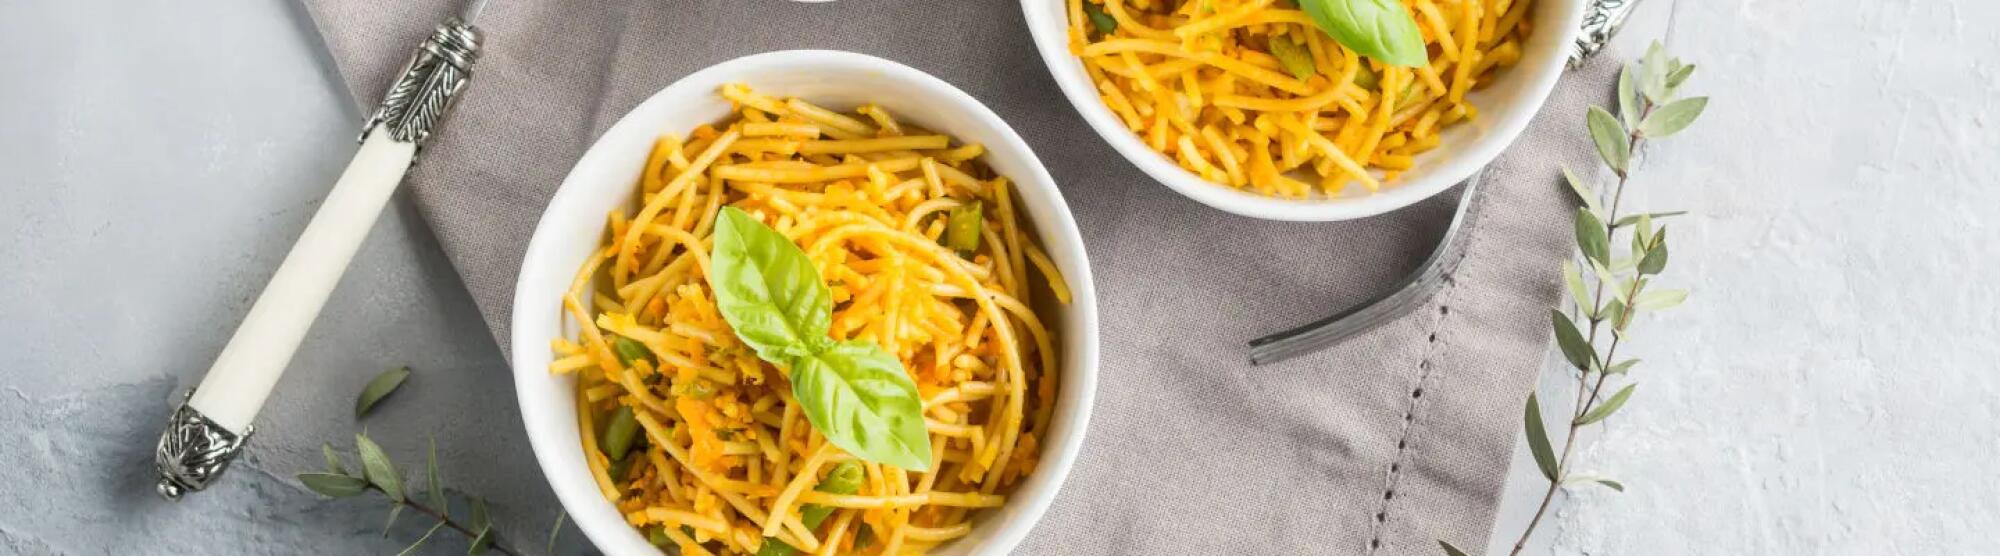 Recette : Spaghetti au thon, curry et fromage frais